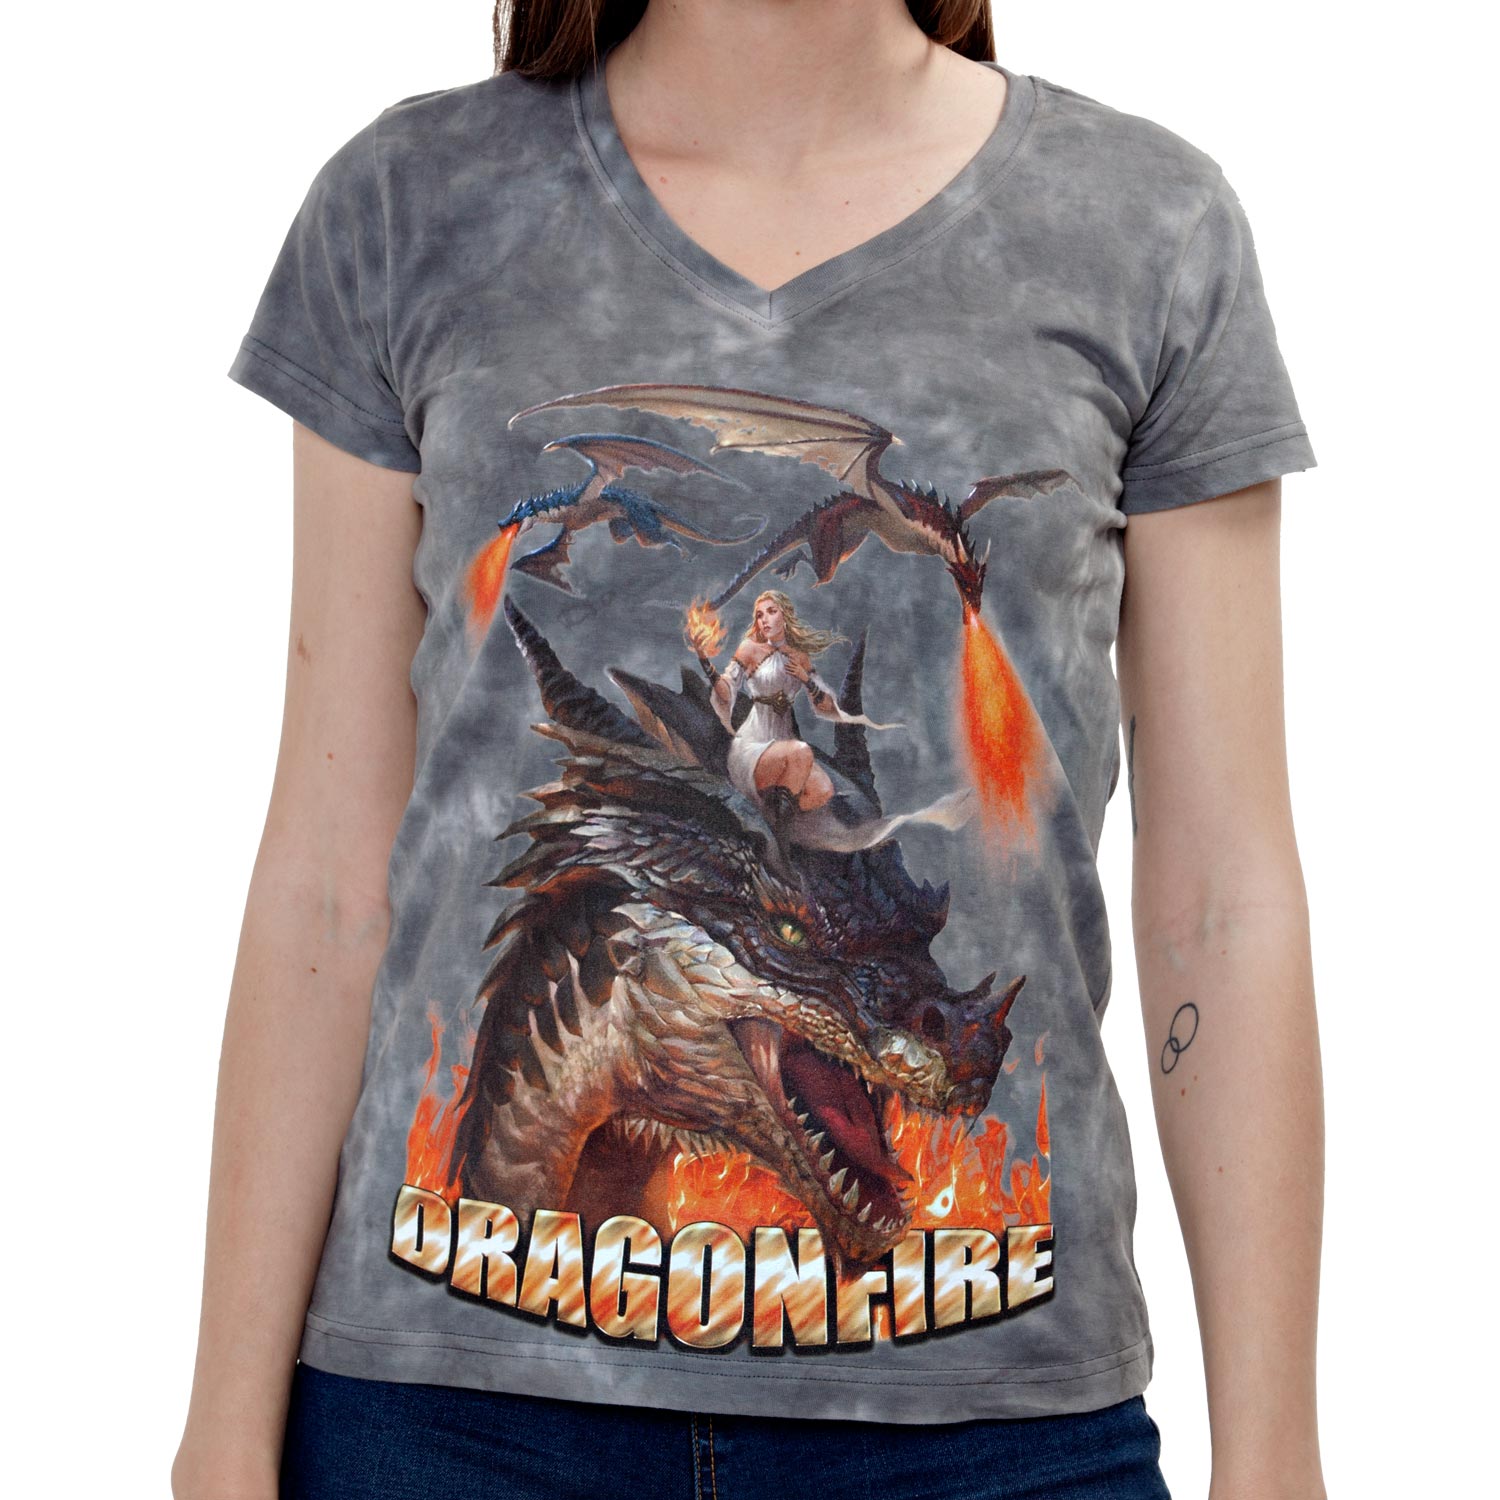 La Camiseta Dragonfire de mujer tiene un dibujo original de tres dragones con la madre de dragones sobre uno de ellos.